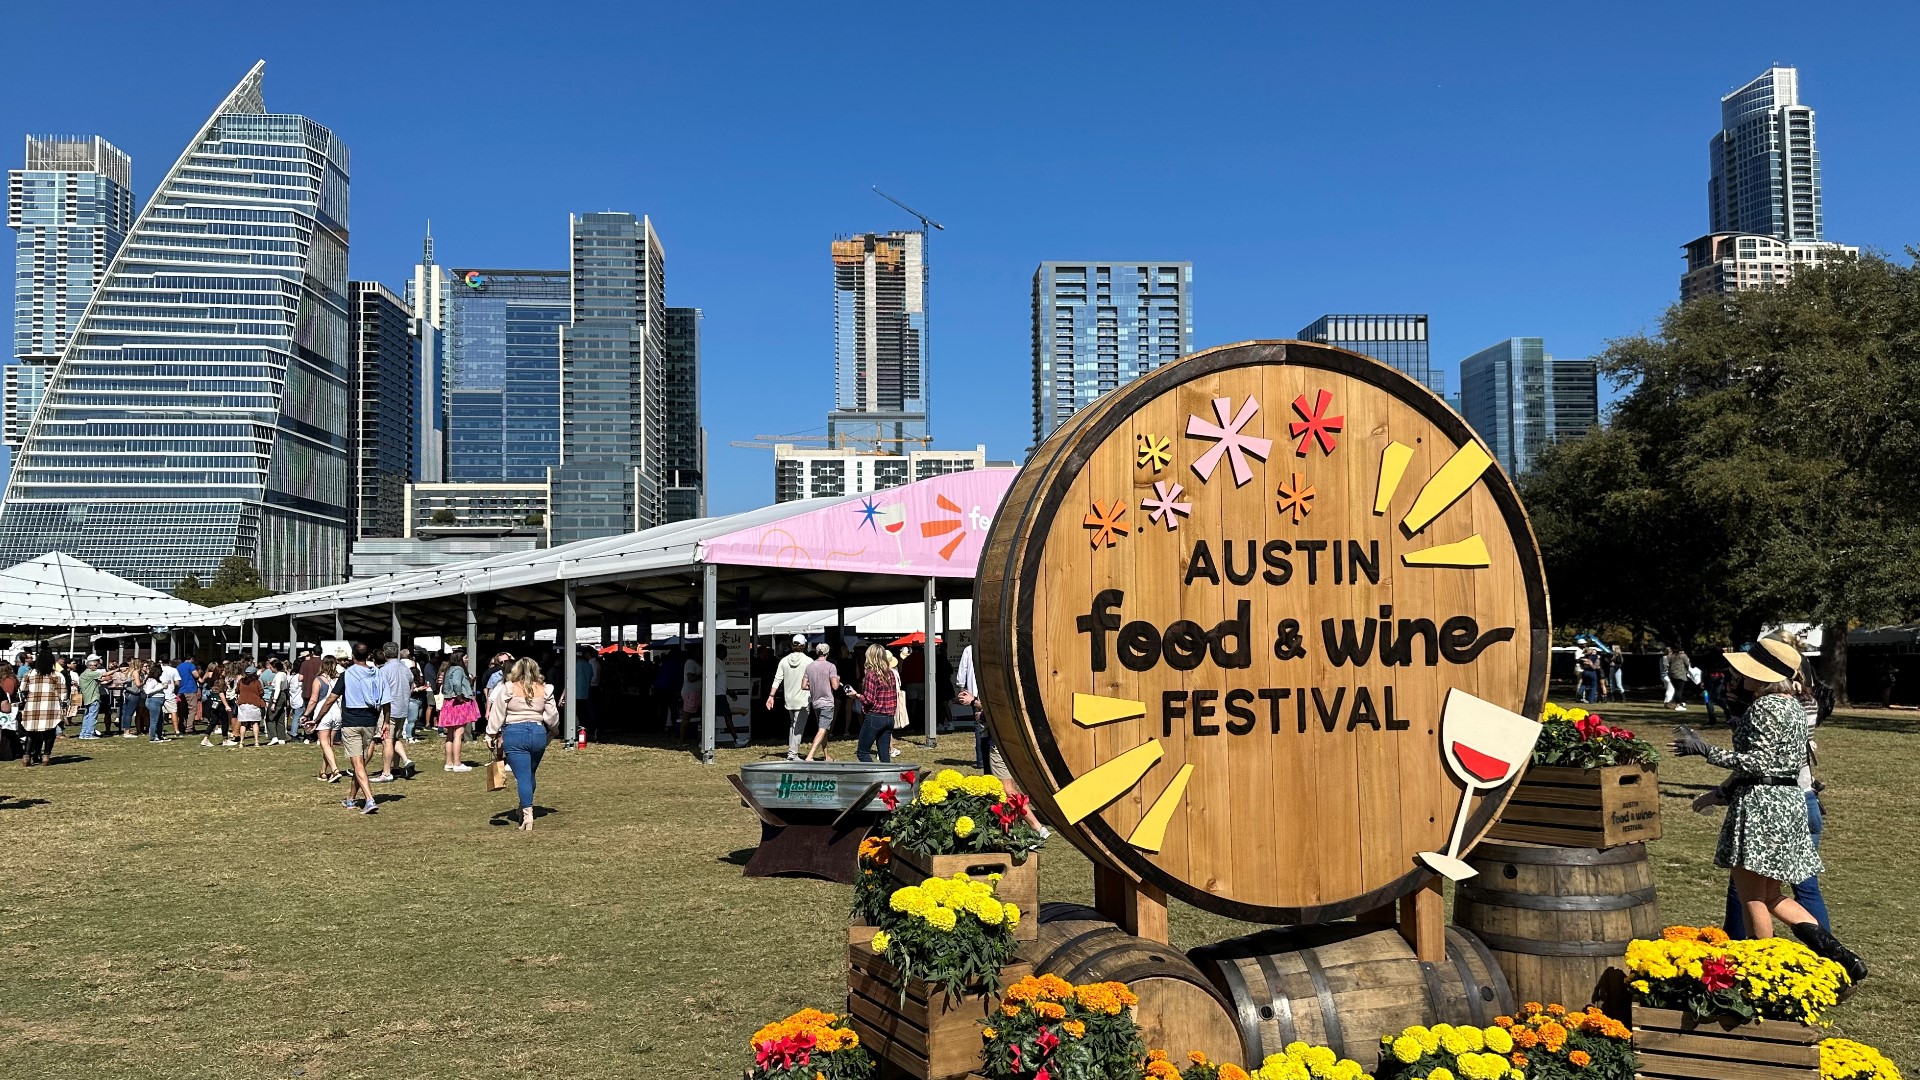 Austin Food & Wine Festival underway at Auditorium Shores | kvue.com